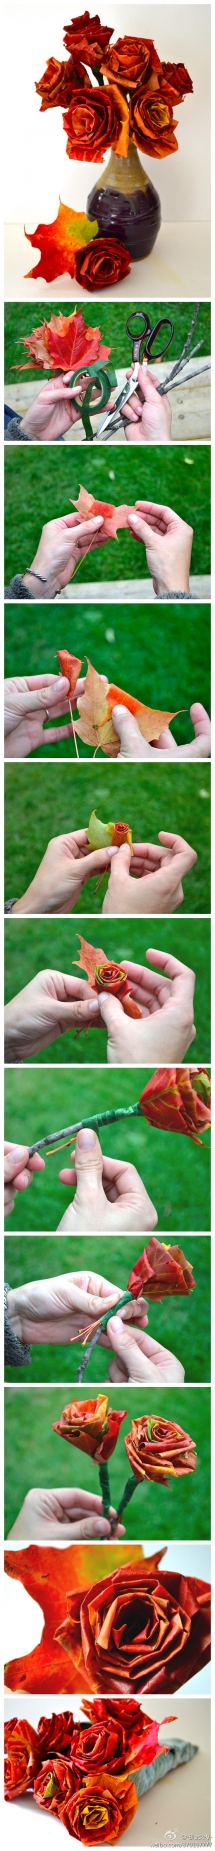 Leaf Roses - Fun crafts